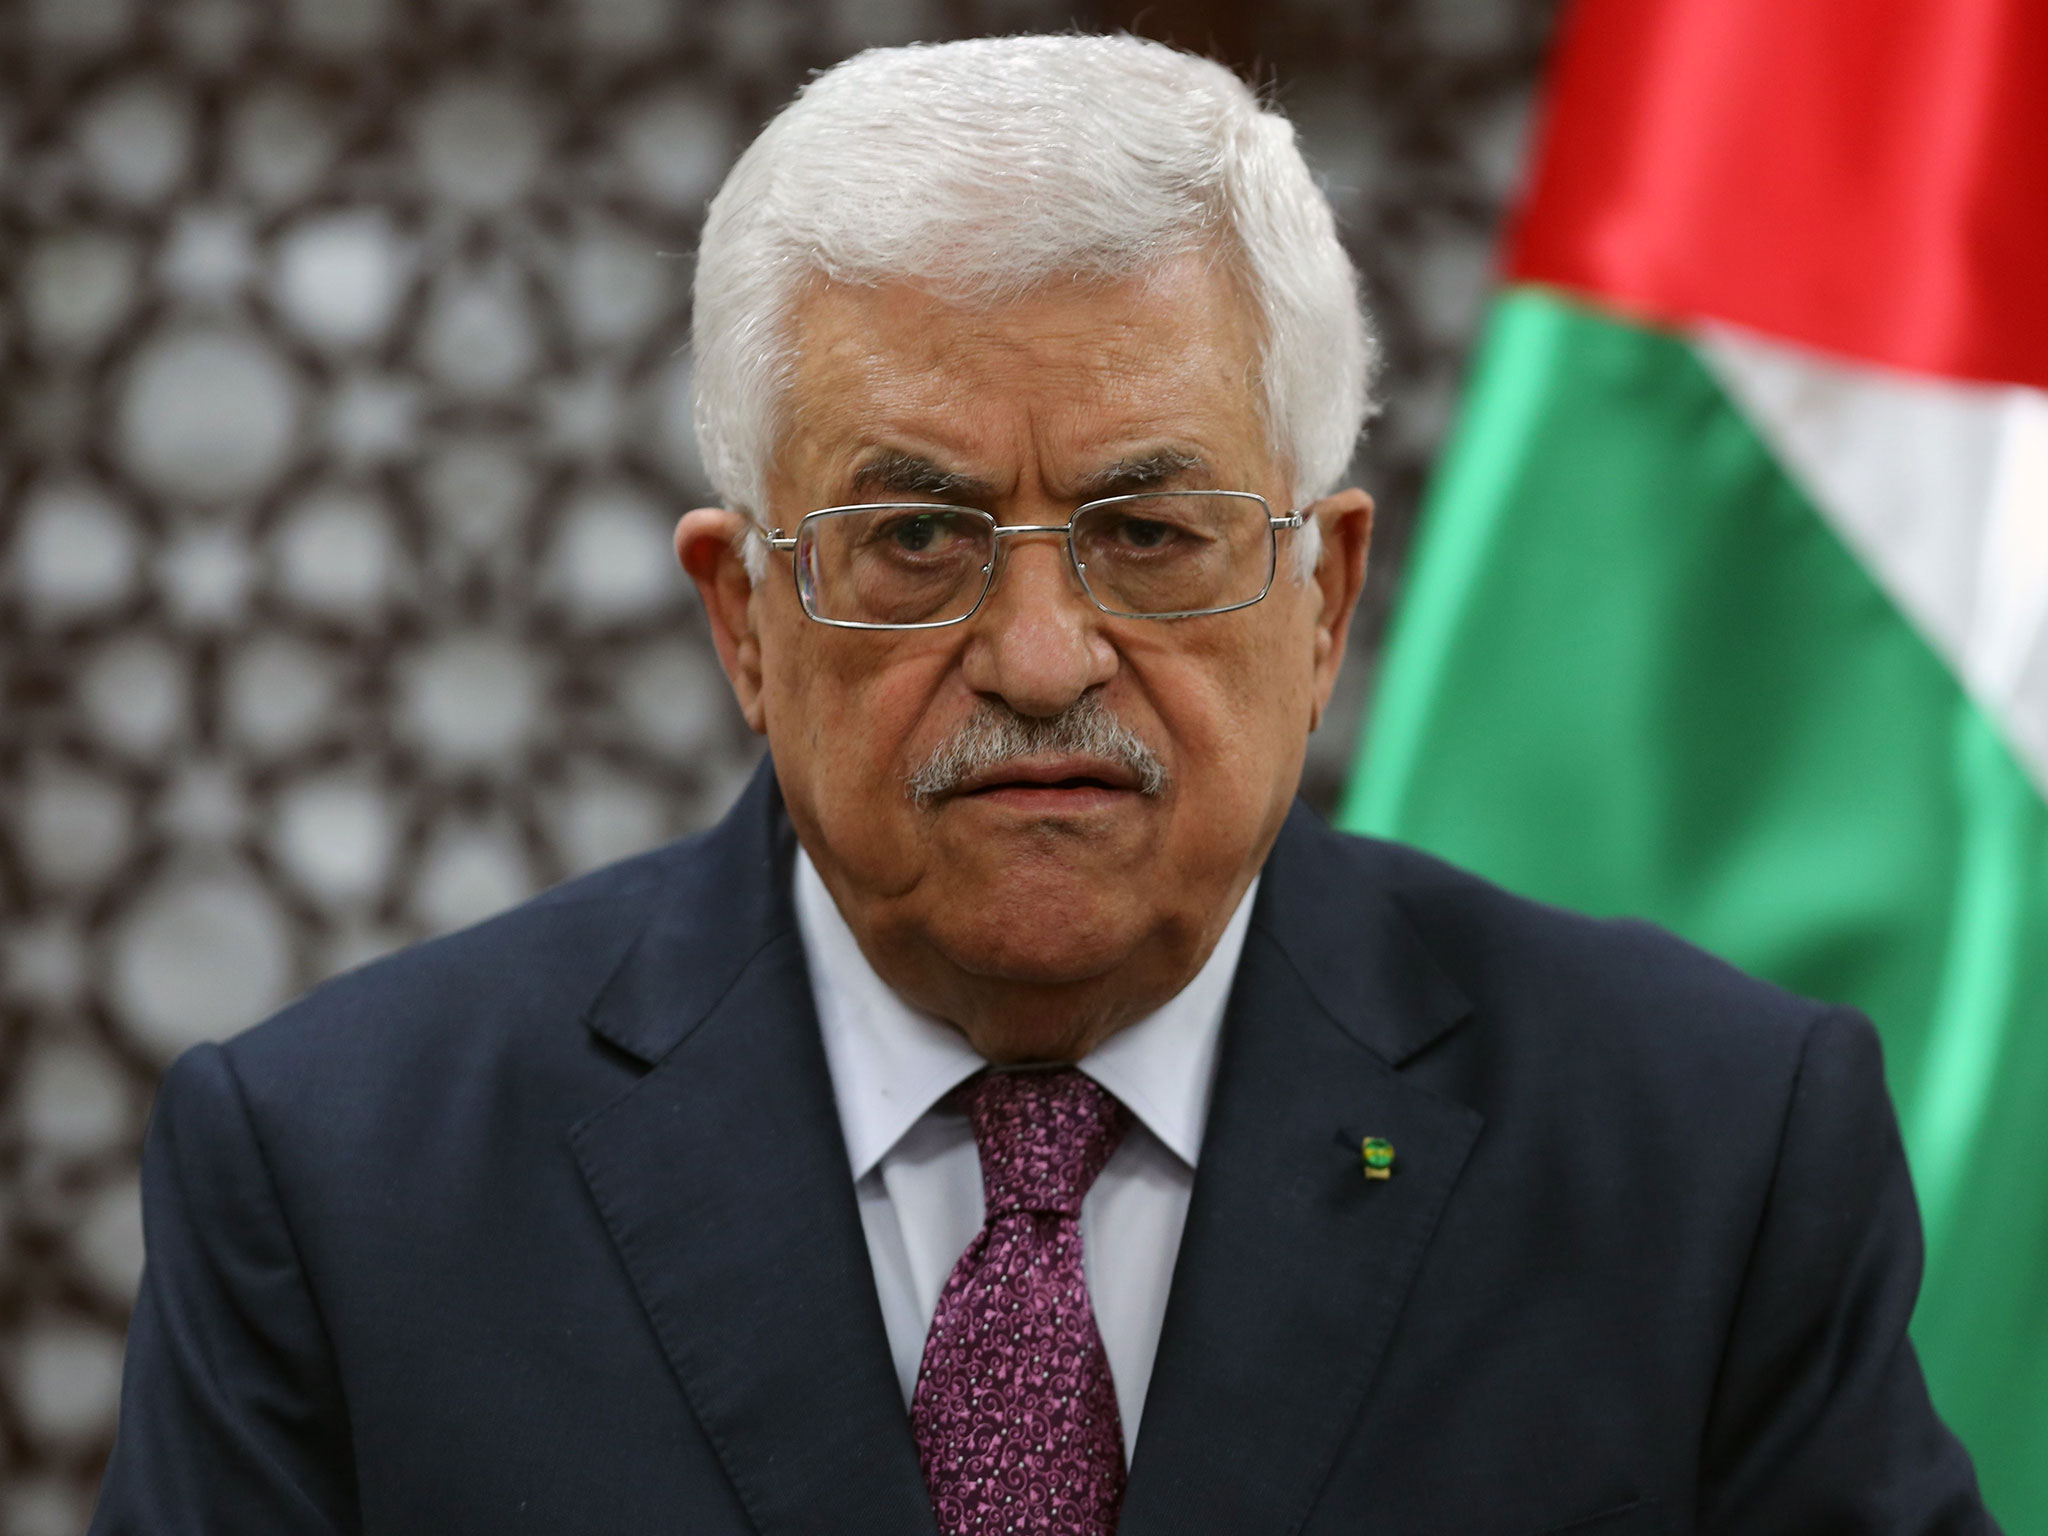 Την αναγνώριση του κράτους της Παλαιστίνης από την ΕΕ θα ζητήσει ο Μαχμούντ Αμπάς